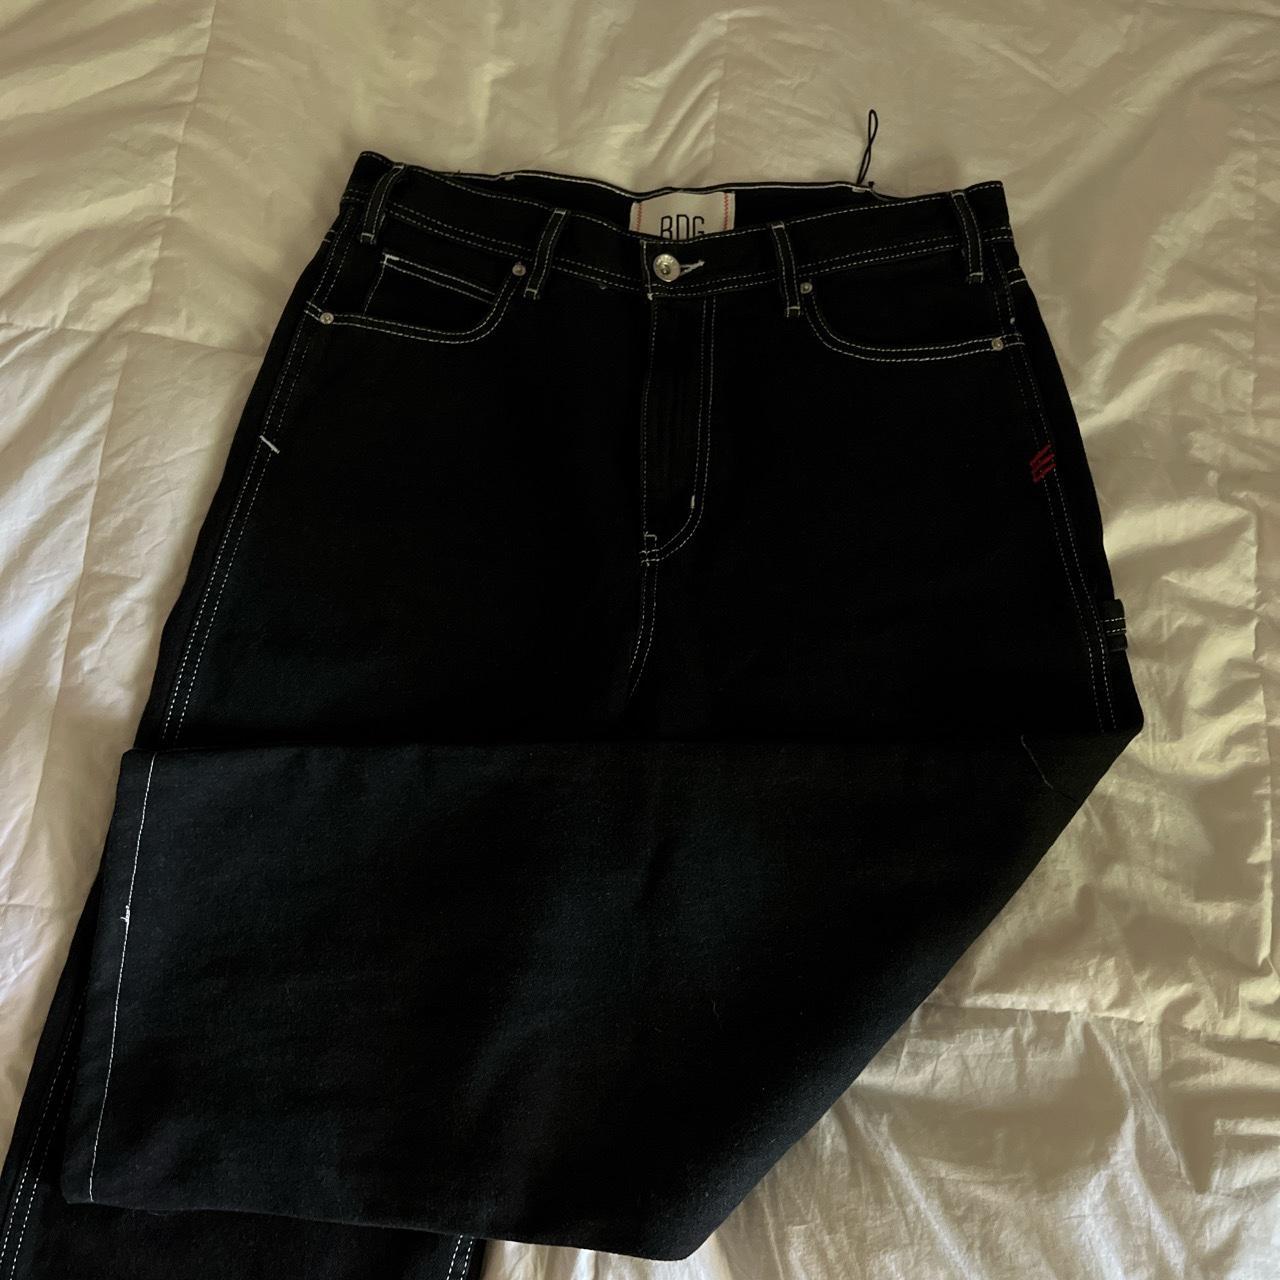 Baggy Fit black BDG jeans 32W 29L ON HOLD - Depop